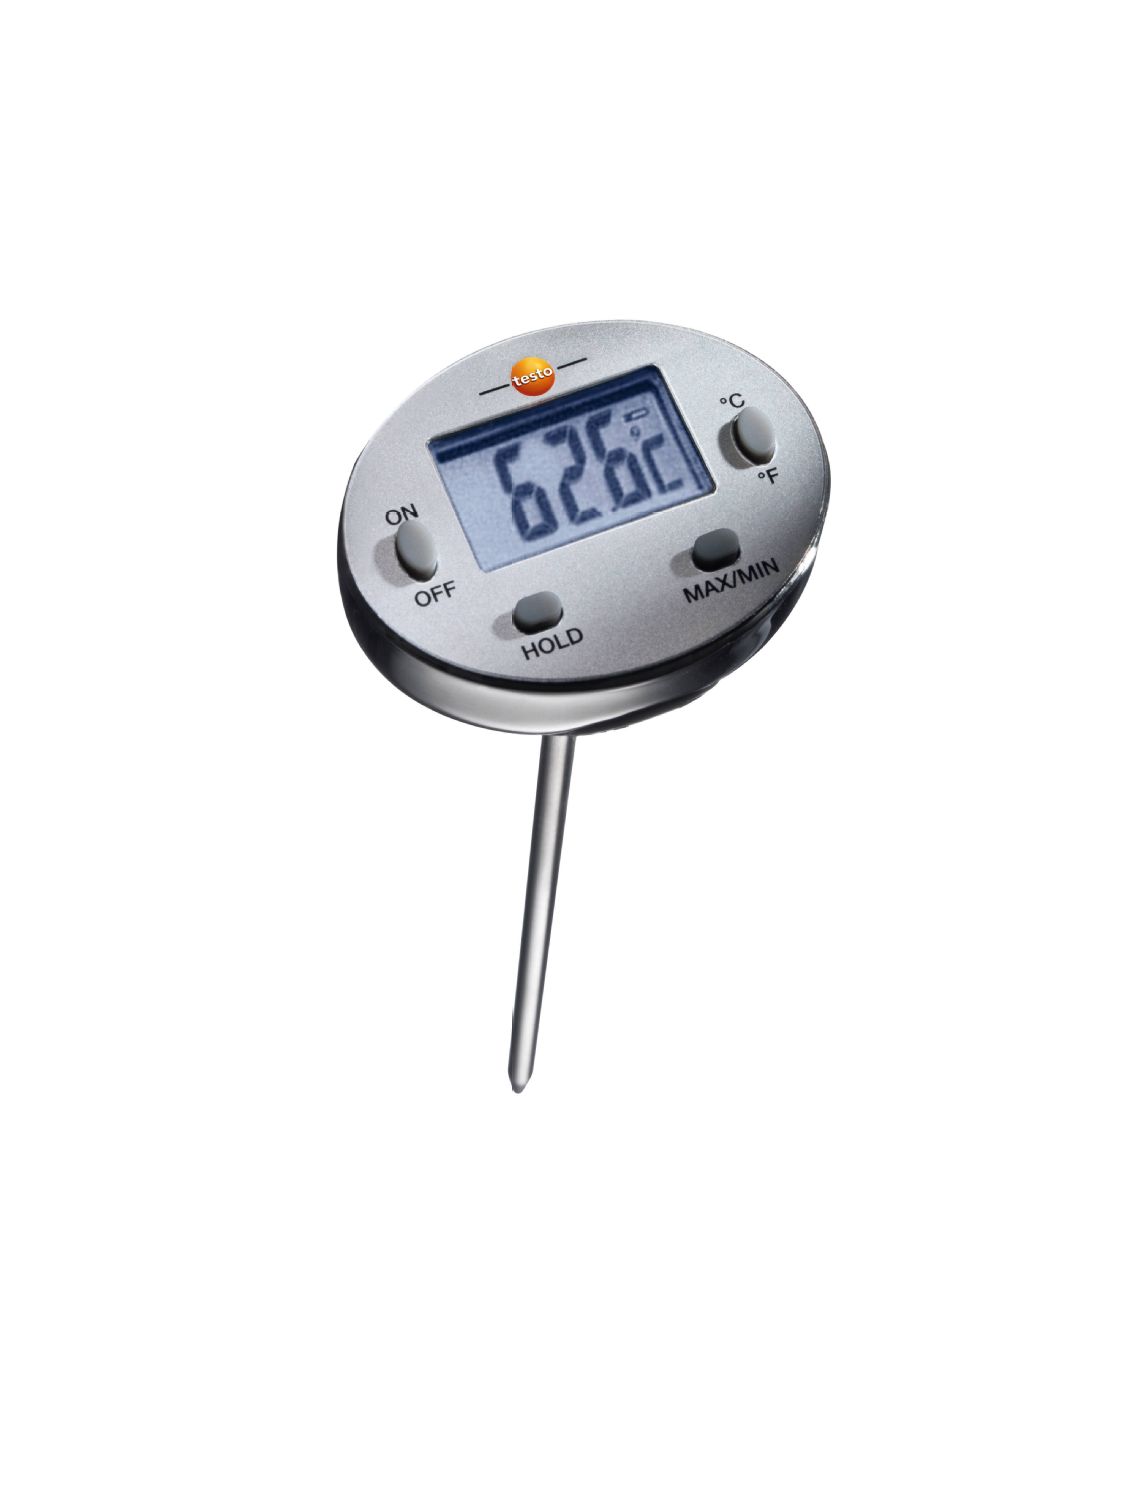 Elegir Termómetro digital mini, redondo, para medir la humedad y